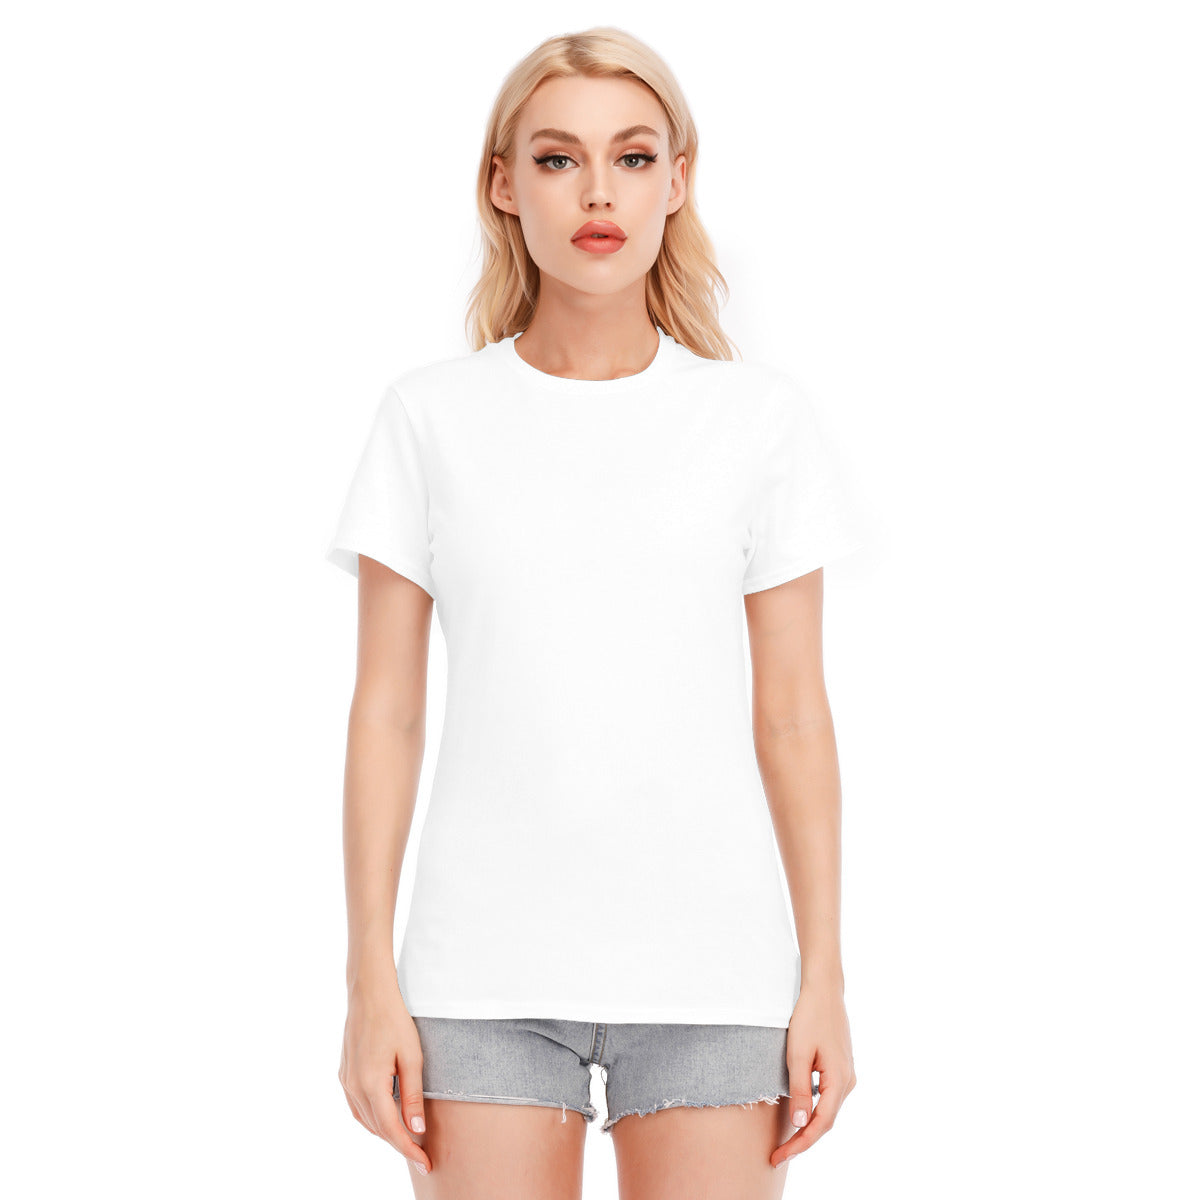 Zihuatanejo 104 -- Unisex O-neck Short Sleeve T-shirt